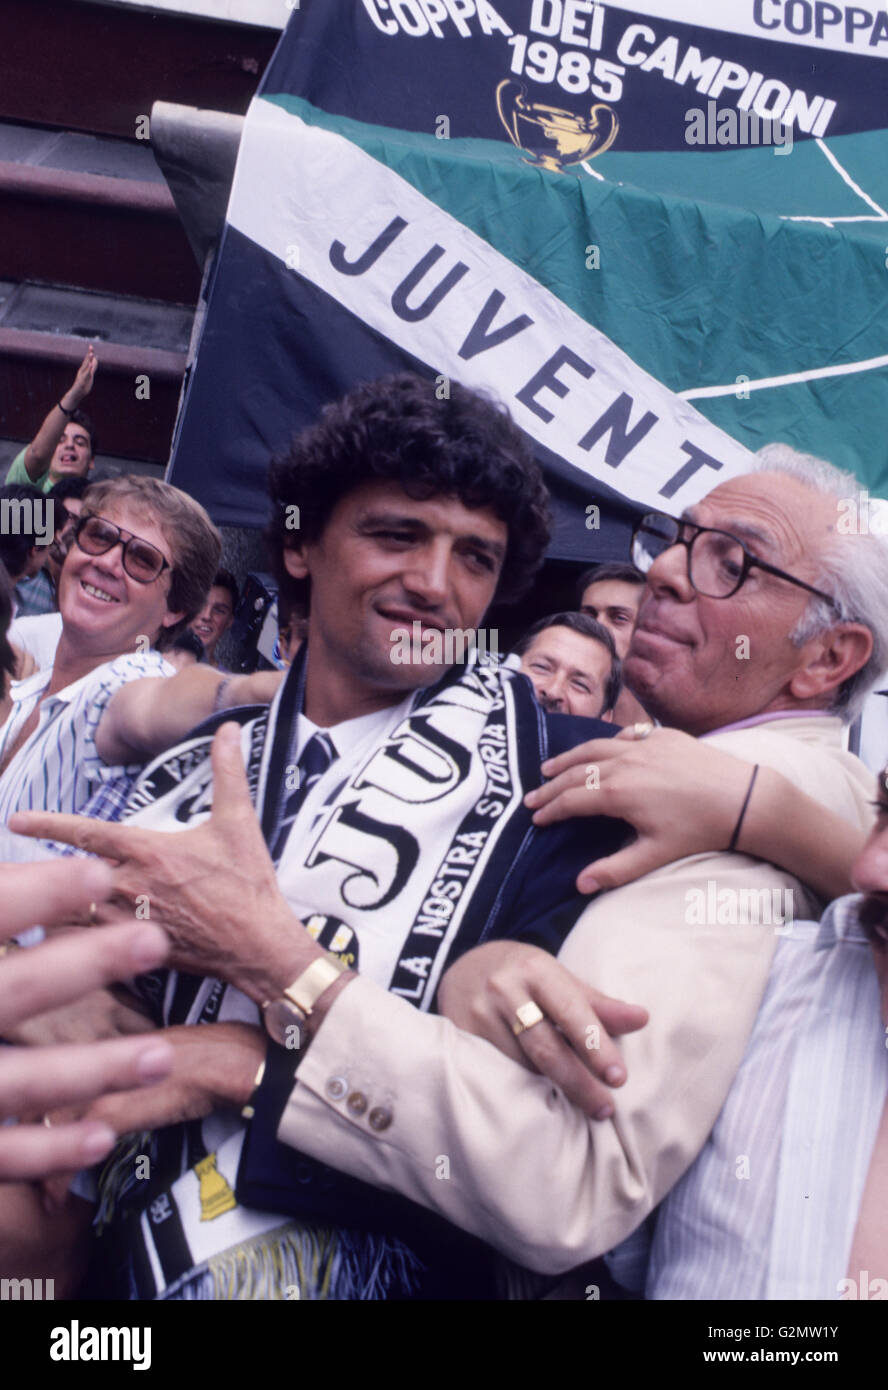 Alessandro altobelli,spillo,JUVENTUS,coppa dei campioni 1985 Foto Stock